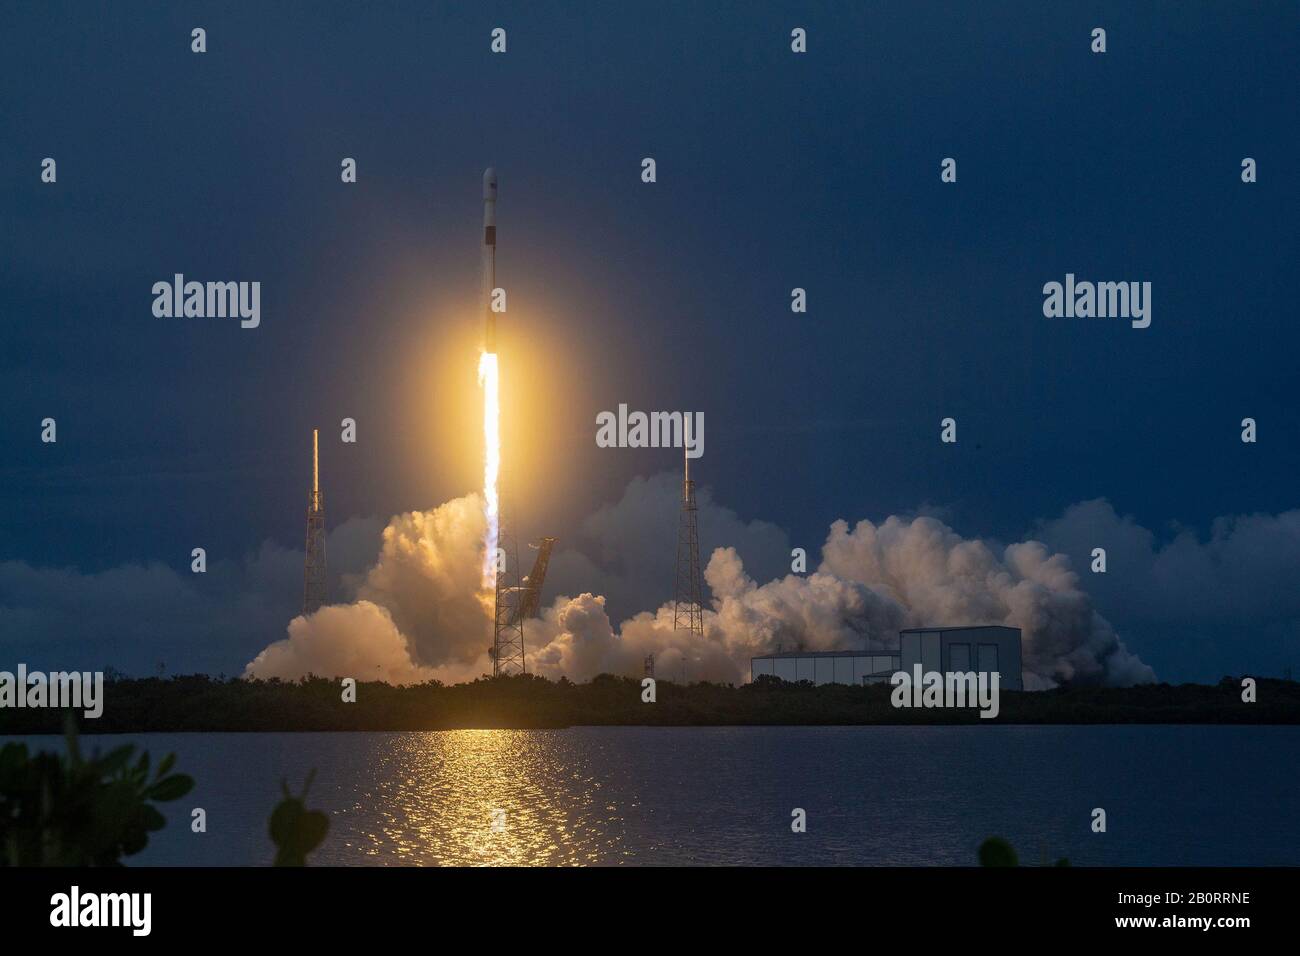 Cabo CAÑAVERAL, EE.UU. - 06 de agosto de 2019 - un cohete SpaceX Falcon 9 se lanza al espacio con el satélite AMOS-17 desde Cabo Cañaveral, Florida, EE.UU. El Foto de stock